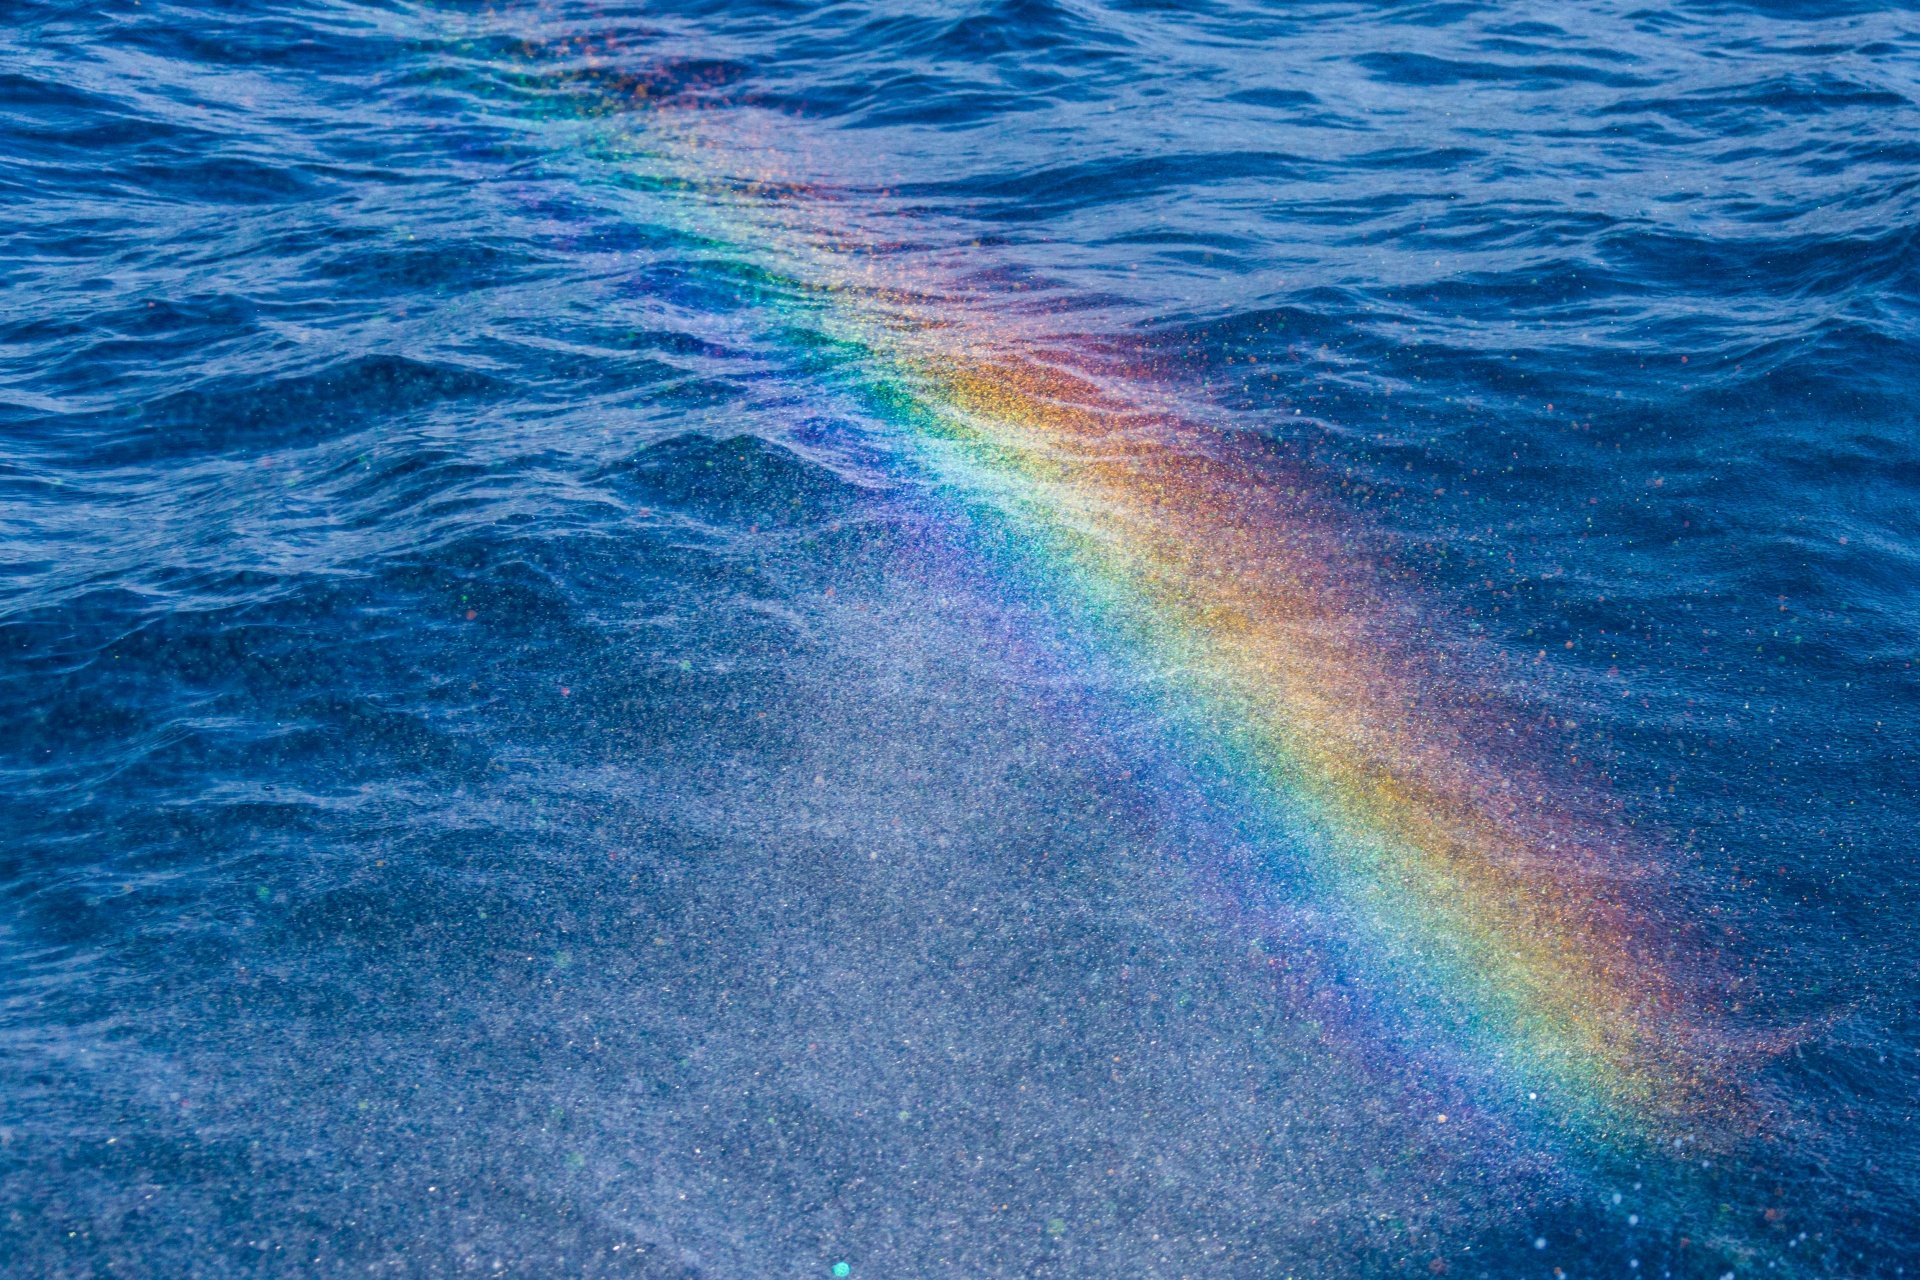 Iz rainbow. Радуга в воде. Радужное море. Отражение радуги в воде. Радужные волны.